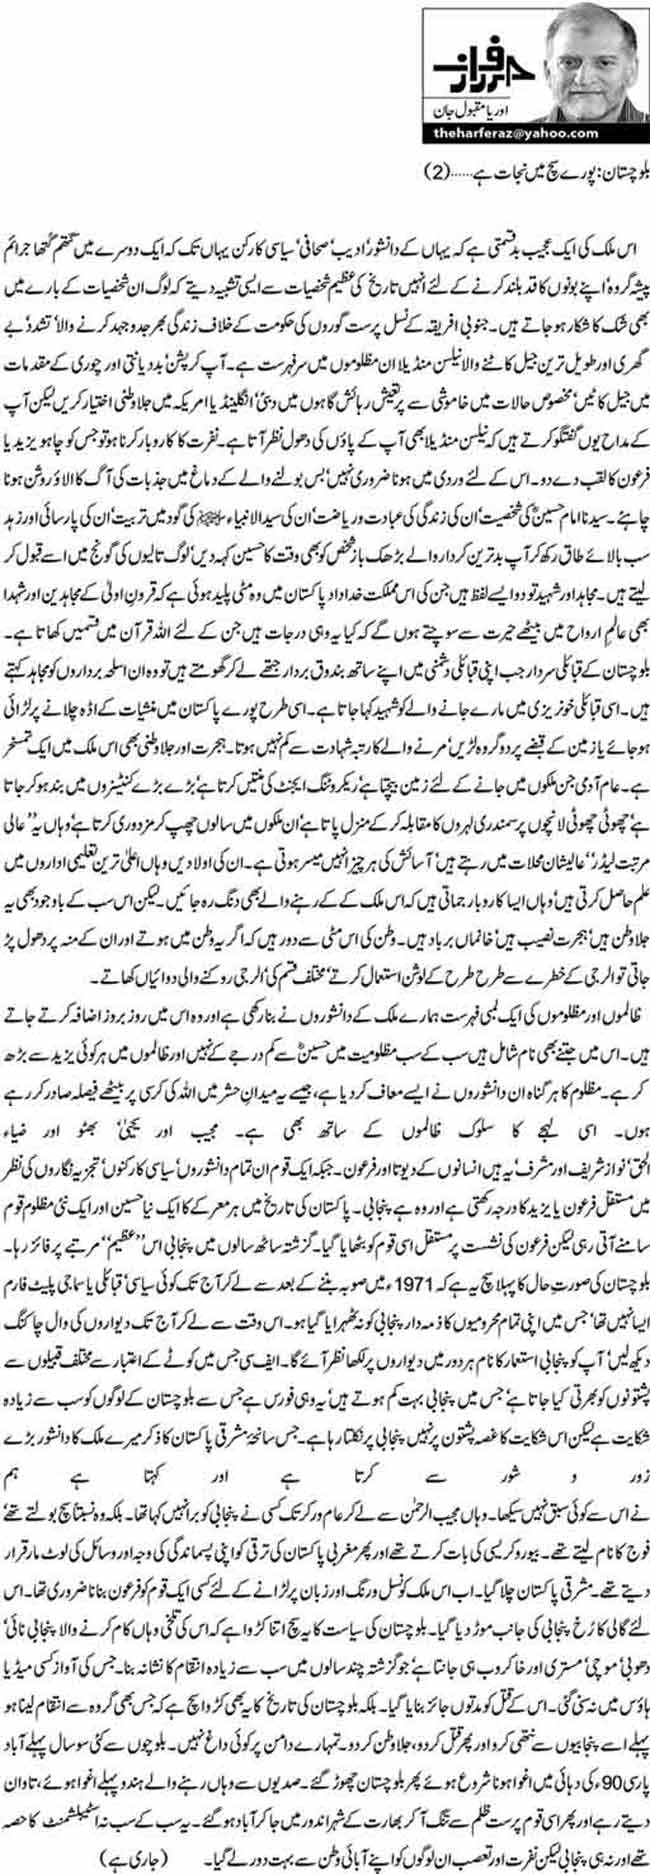 بلوچستان: پورے سچ میں نجات ہے.........(2)